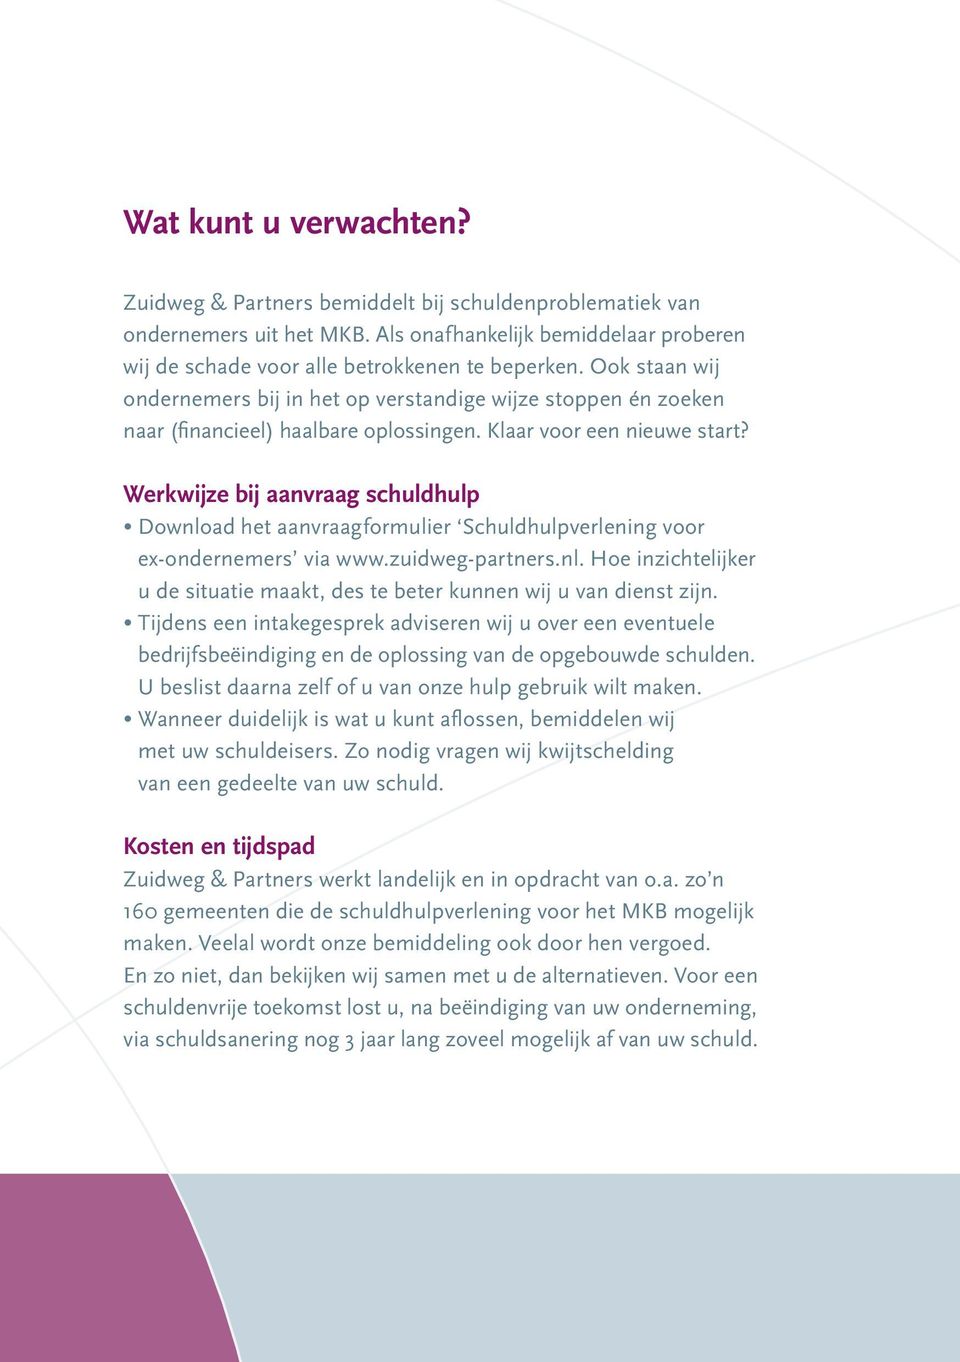 Werkwijze bij aanvraag schuldhulp Download het aanvraagformulier Schuldhulpverlening voor ex-ondernemers via www.zuidweg-partners.nl. Hoe inzichtelijker u de situatie maakt, des te beter kunnen wij u van dienst zijn.